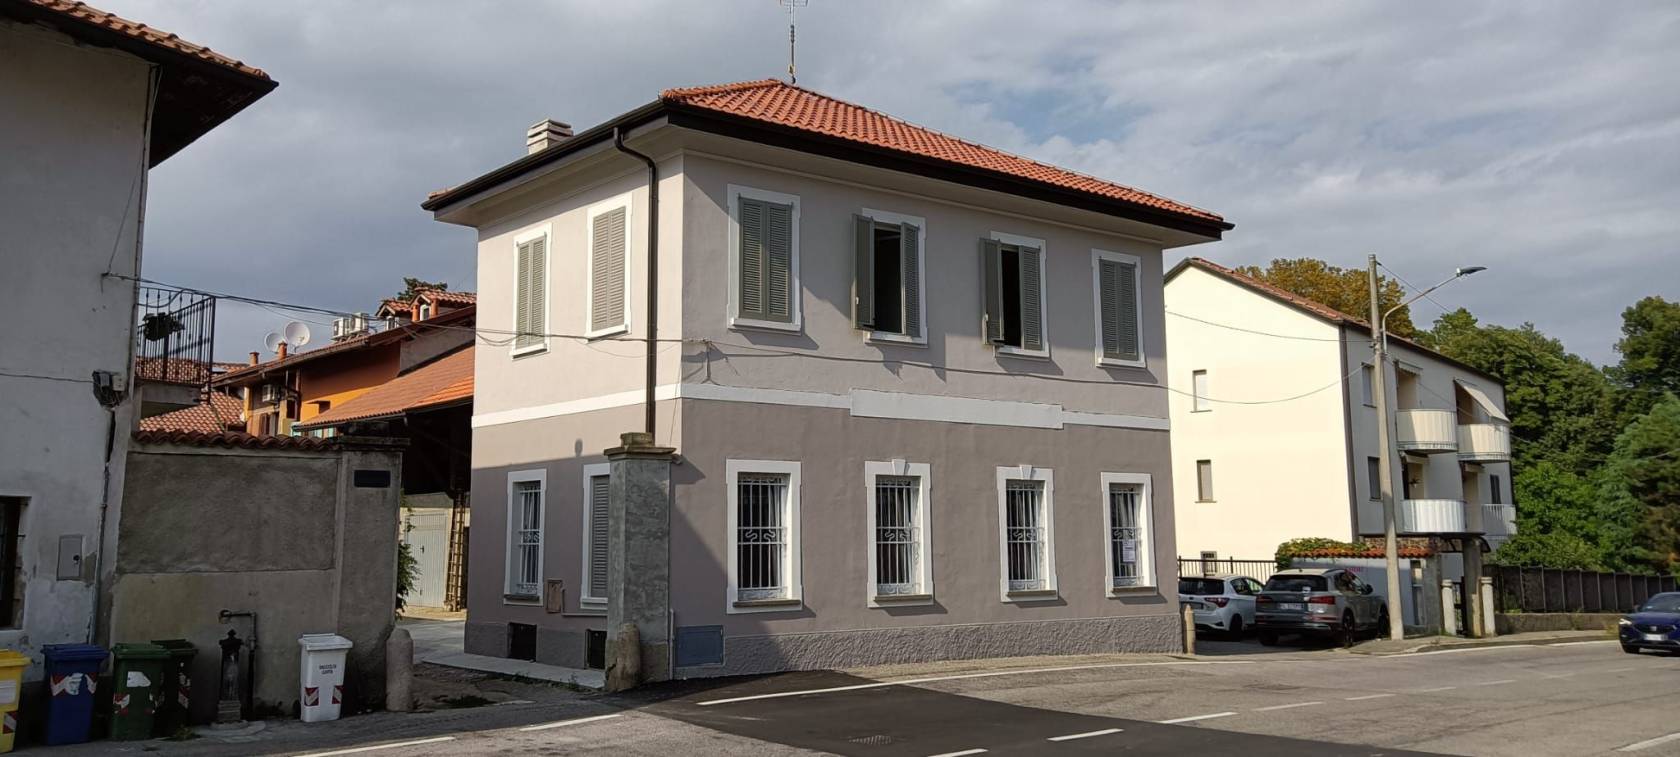 BERNAREGGIO, frazione Villanova, a soli 2 km da Vimercate, casa d'epoca indipendente, pronta consegna, viene consegnata TOTALMENTE RISTRUTTURATA, sia 